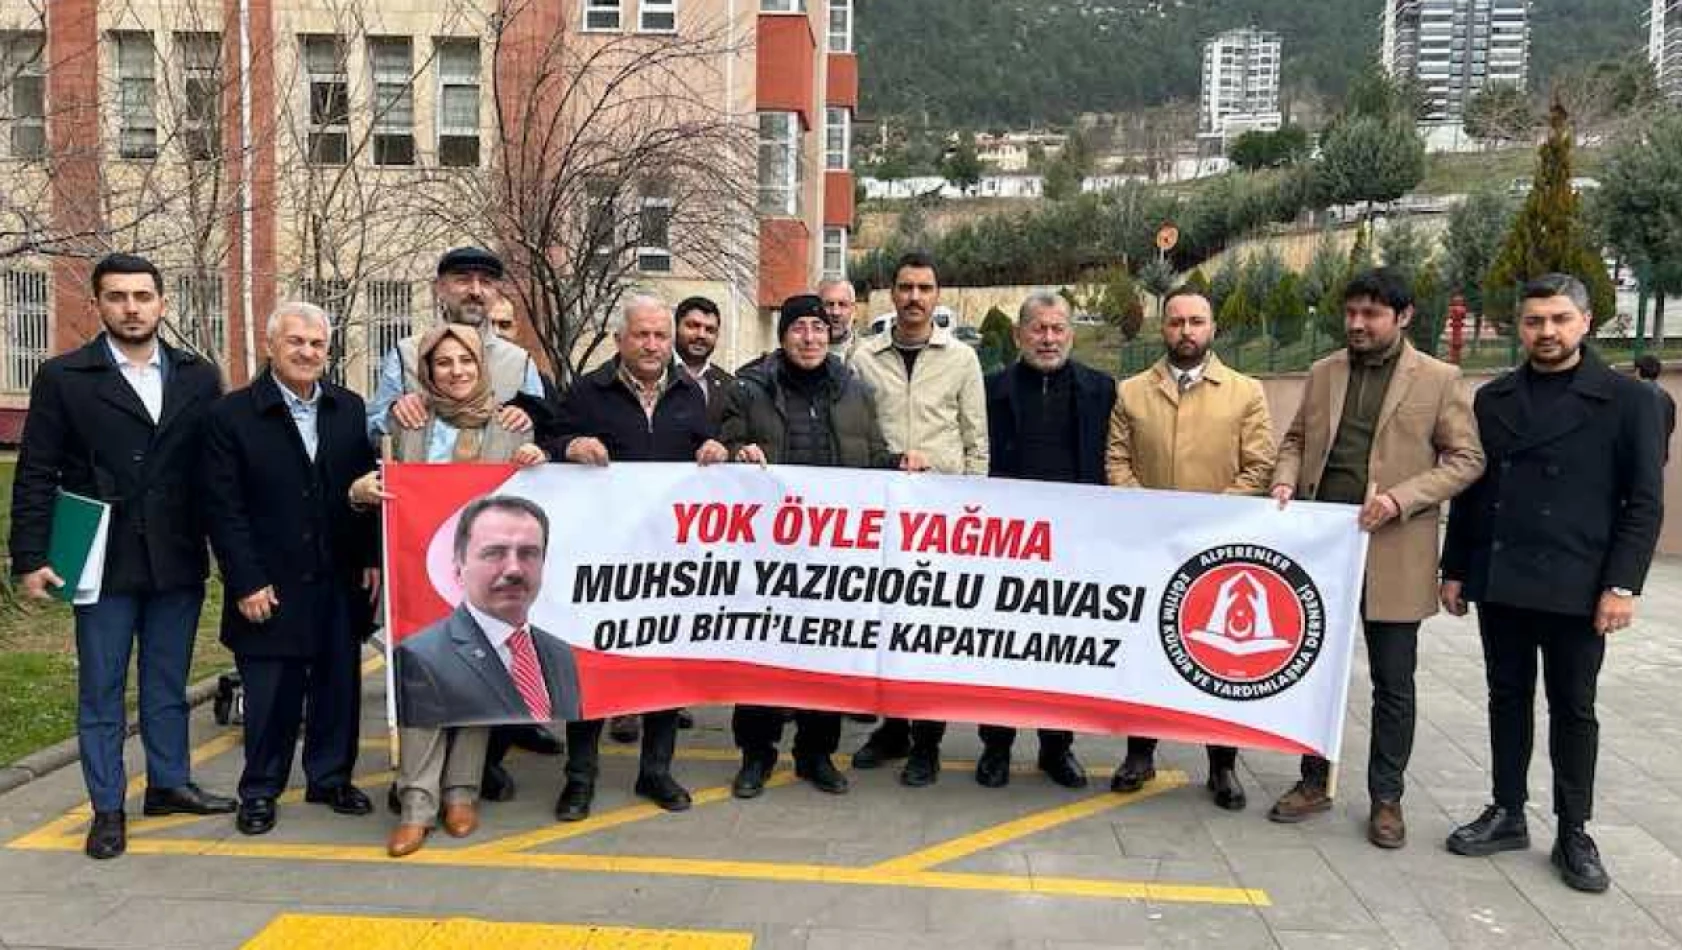 Muhsin Yazıcıoğlu'nun ölümüne ilişkin davaya devam edildi, Öznur: Gün gelecek hesap vereceksiniz